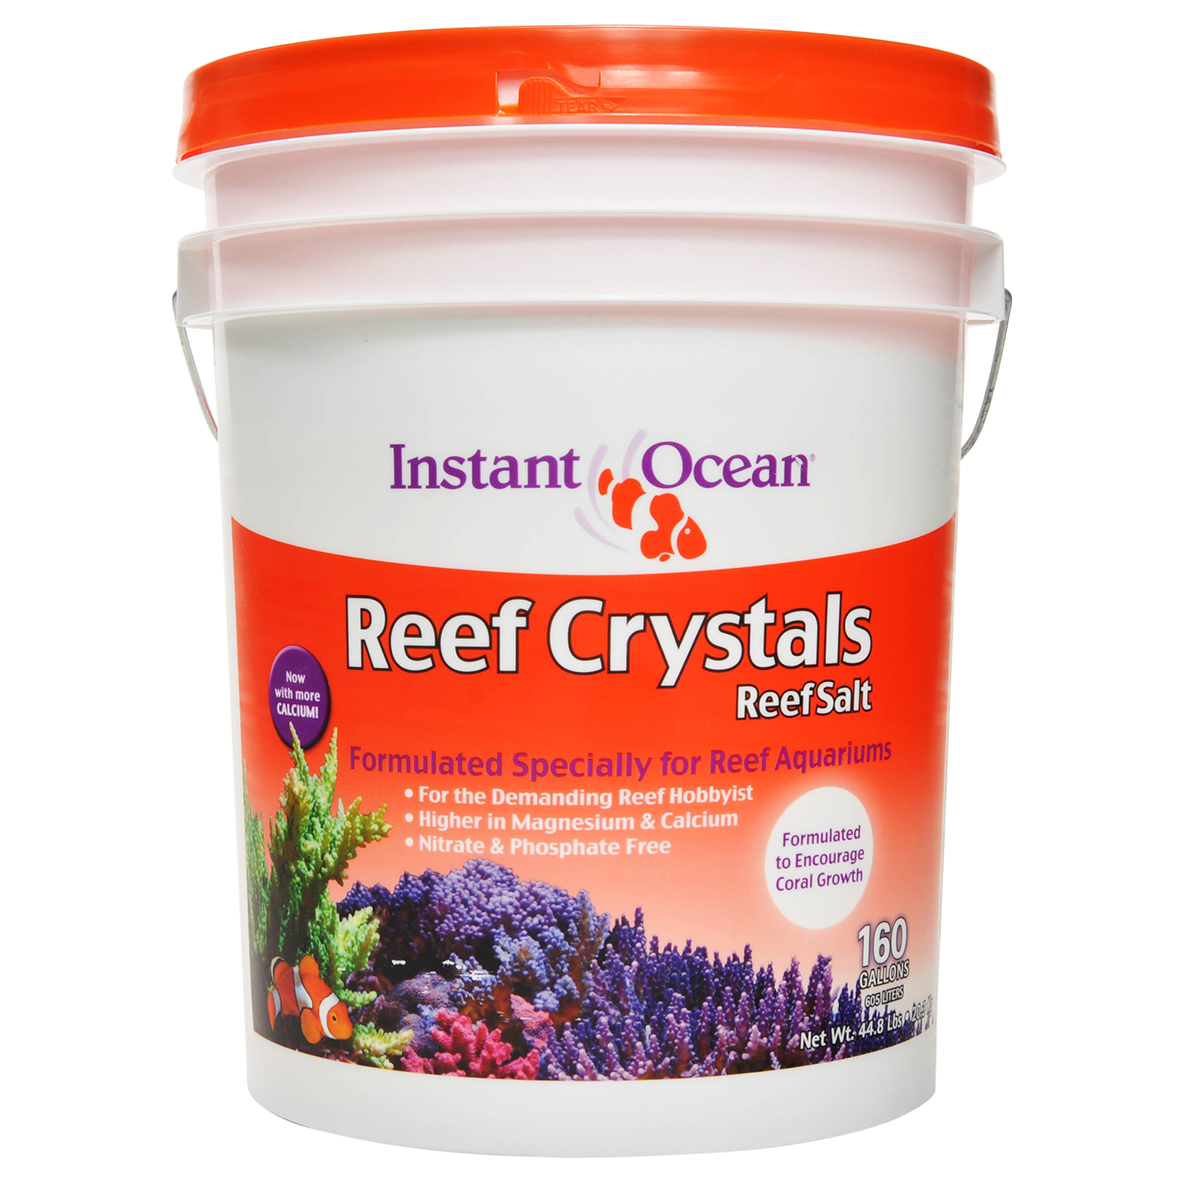 Salt mix. Reef Crystal Salt. Aquatum Reef Salt. Как растворить соль риф Кристалс.